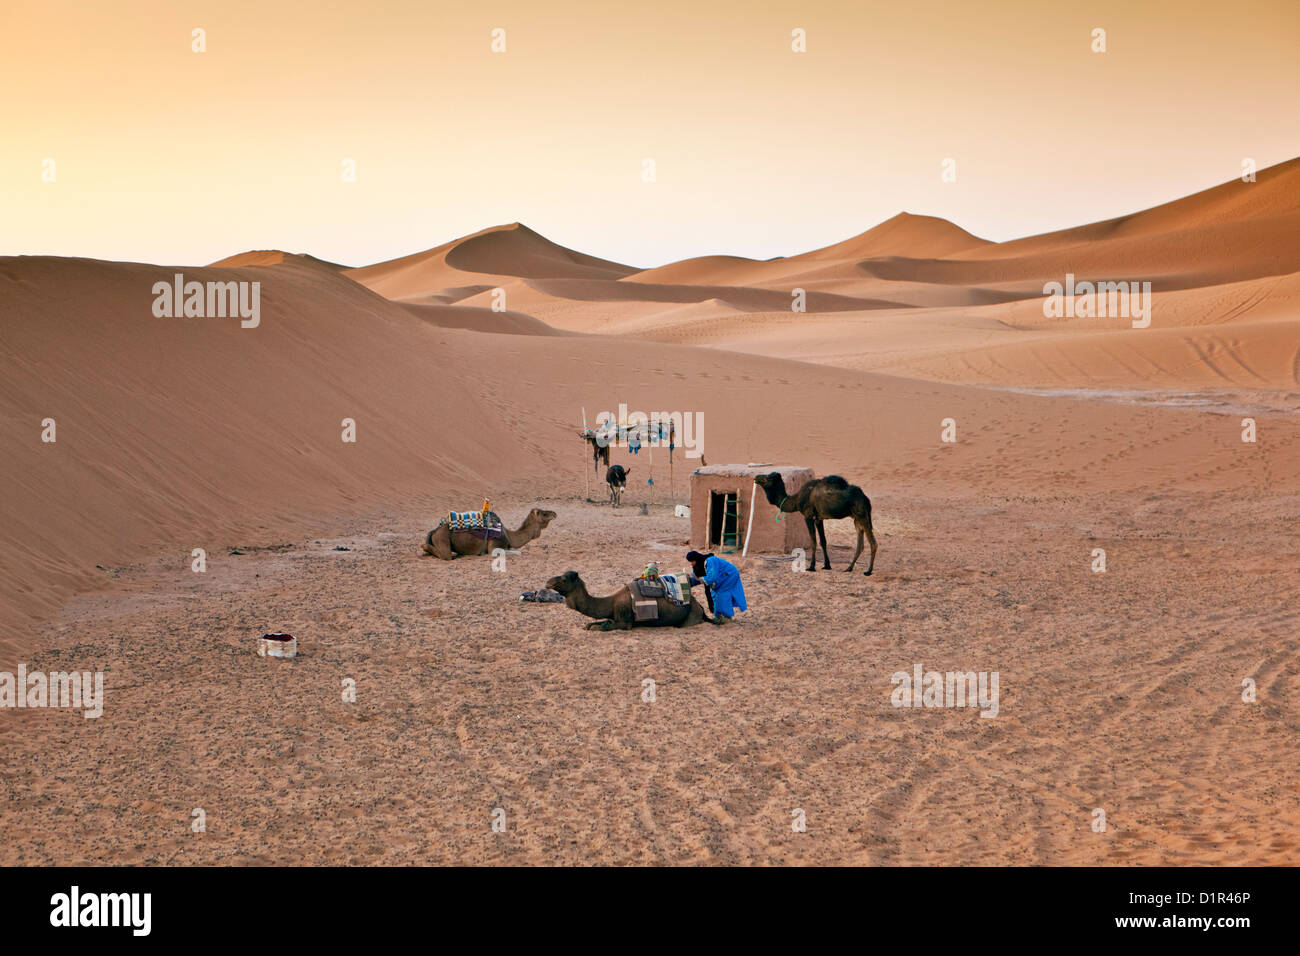 Morocco, M'Hamid, Erg Chigaga sand dunes. Sahara desert. Bivouac of camel-driver. Stock Photo